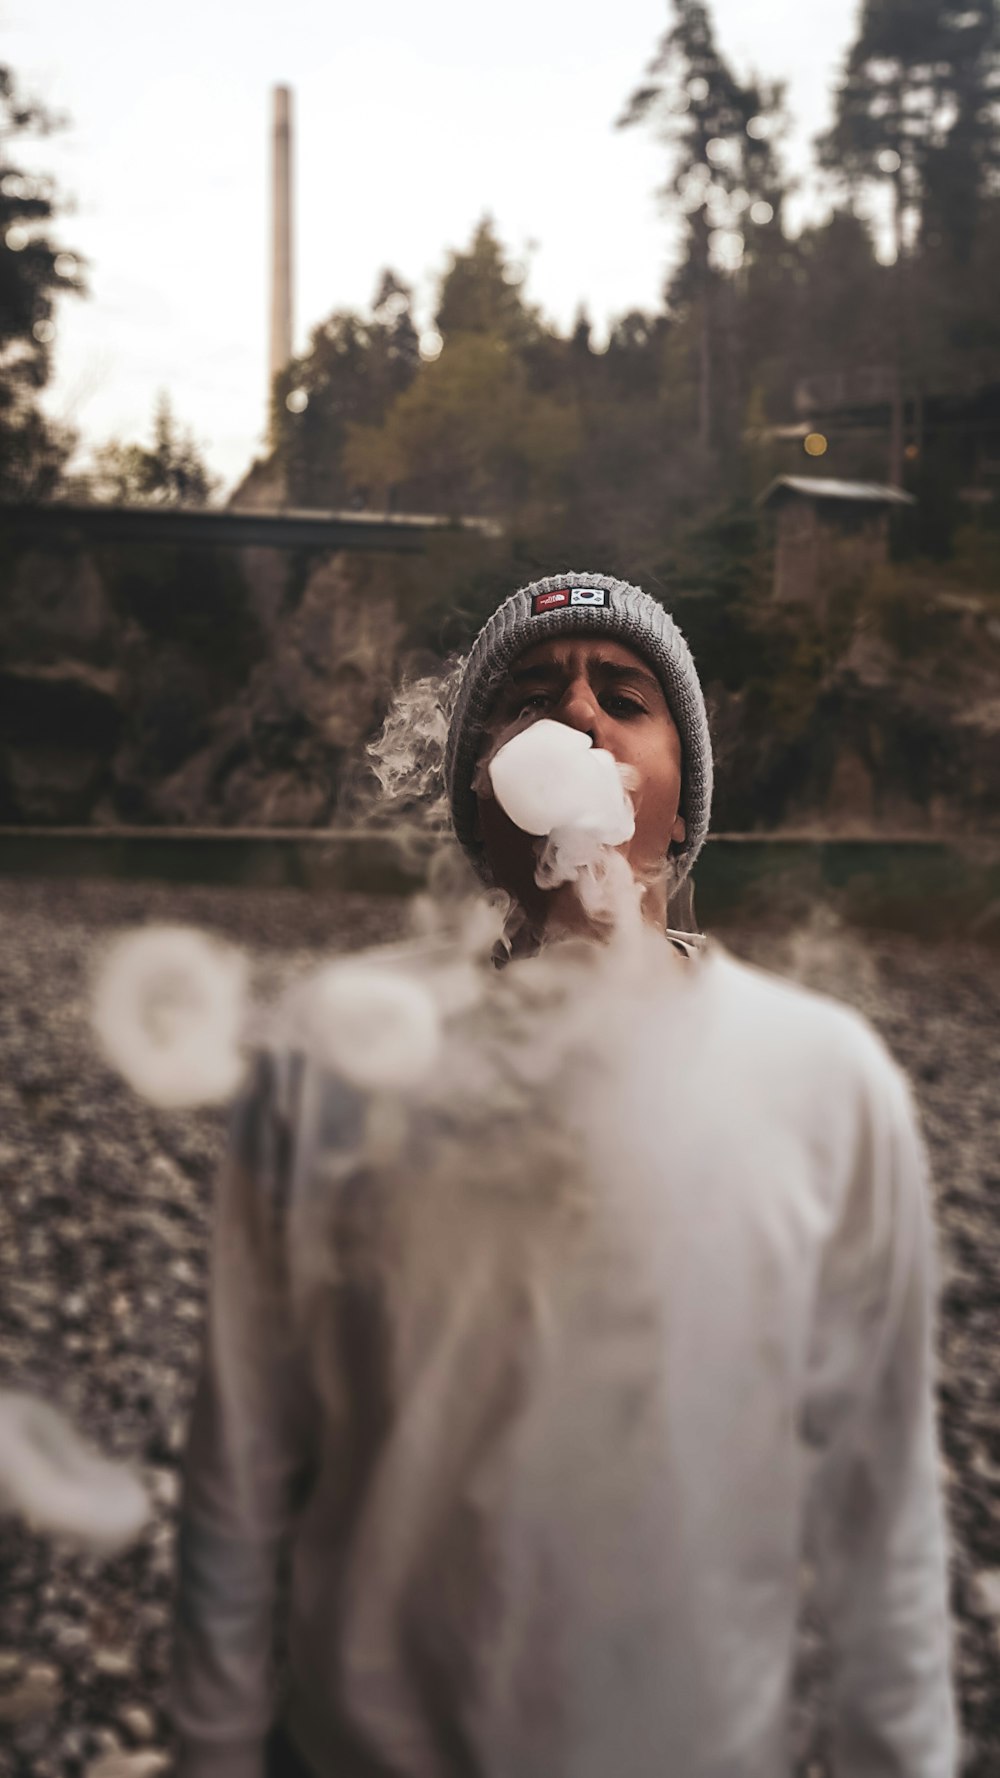 man doing smoke tricks